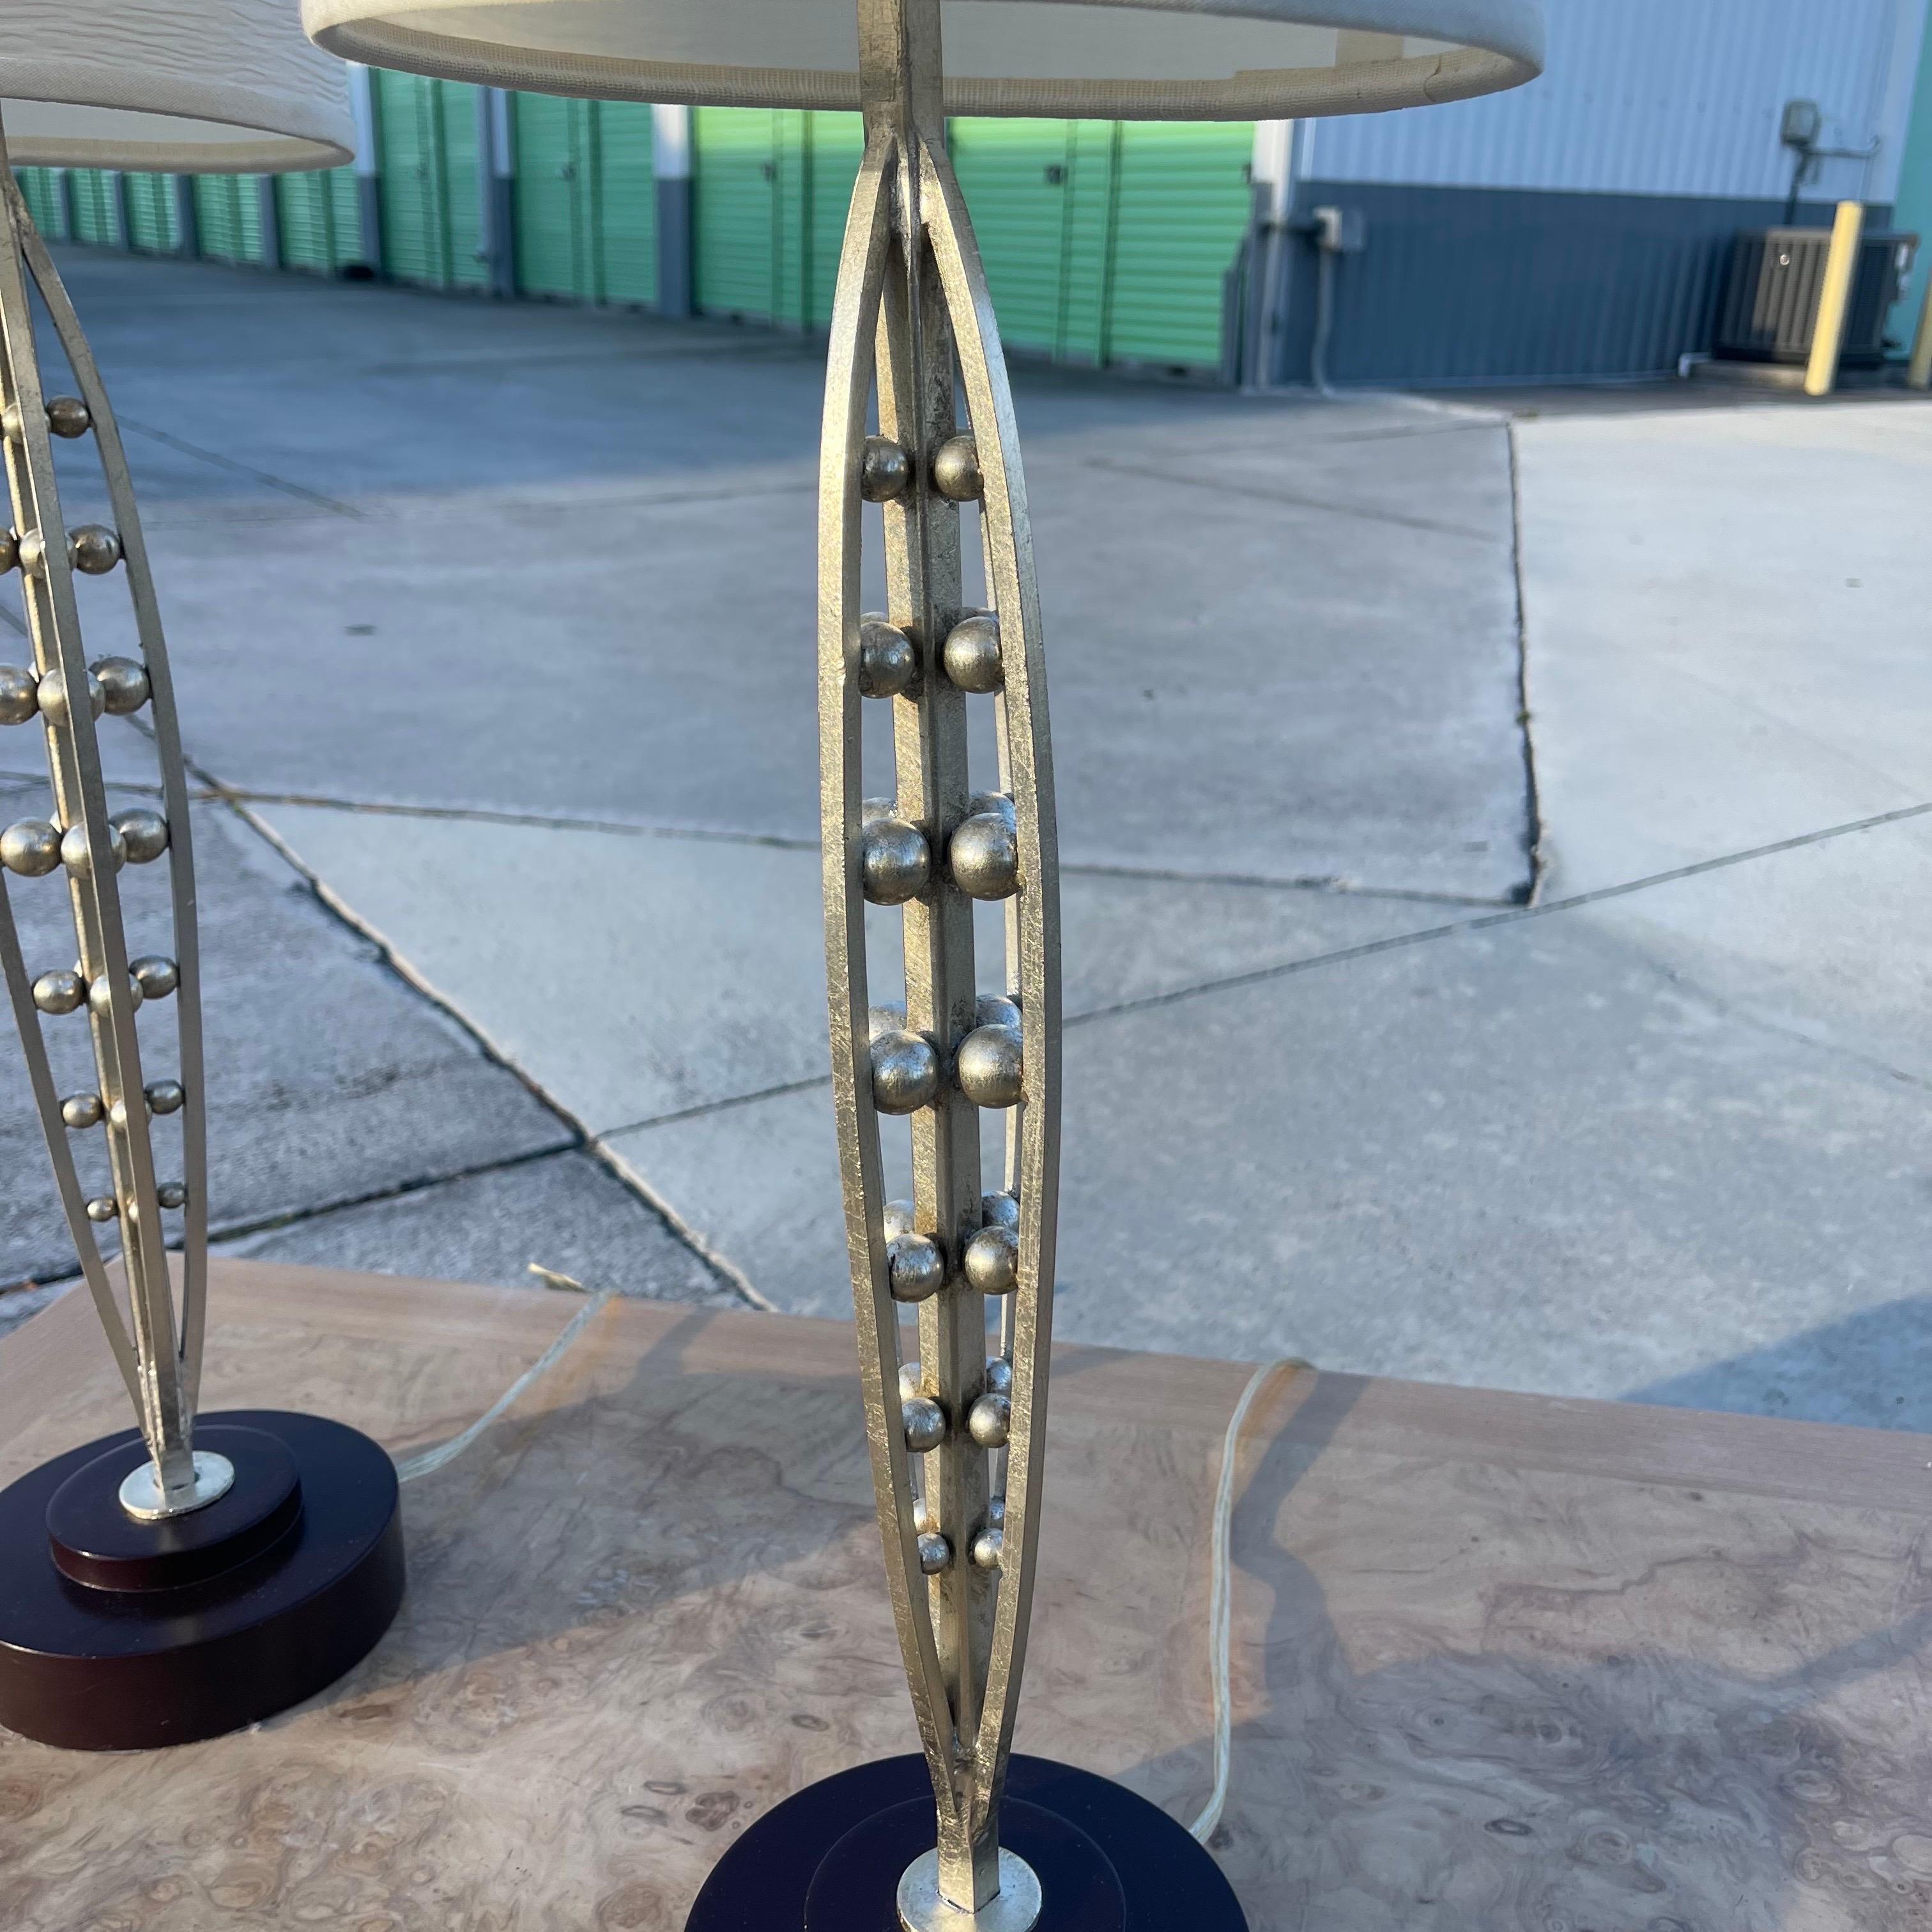 Fabuleuses lampes de table dorées à la feuille d'argent par Fine Art Lamps of Miami.

Les mesures données incluent l'ombre. Le diamètre de la base de la lampe est de 6 pouces.